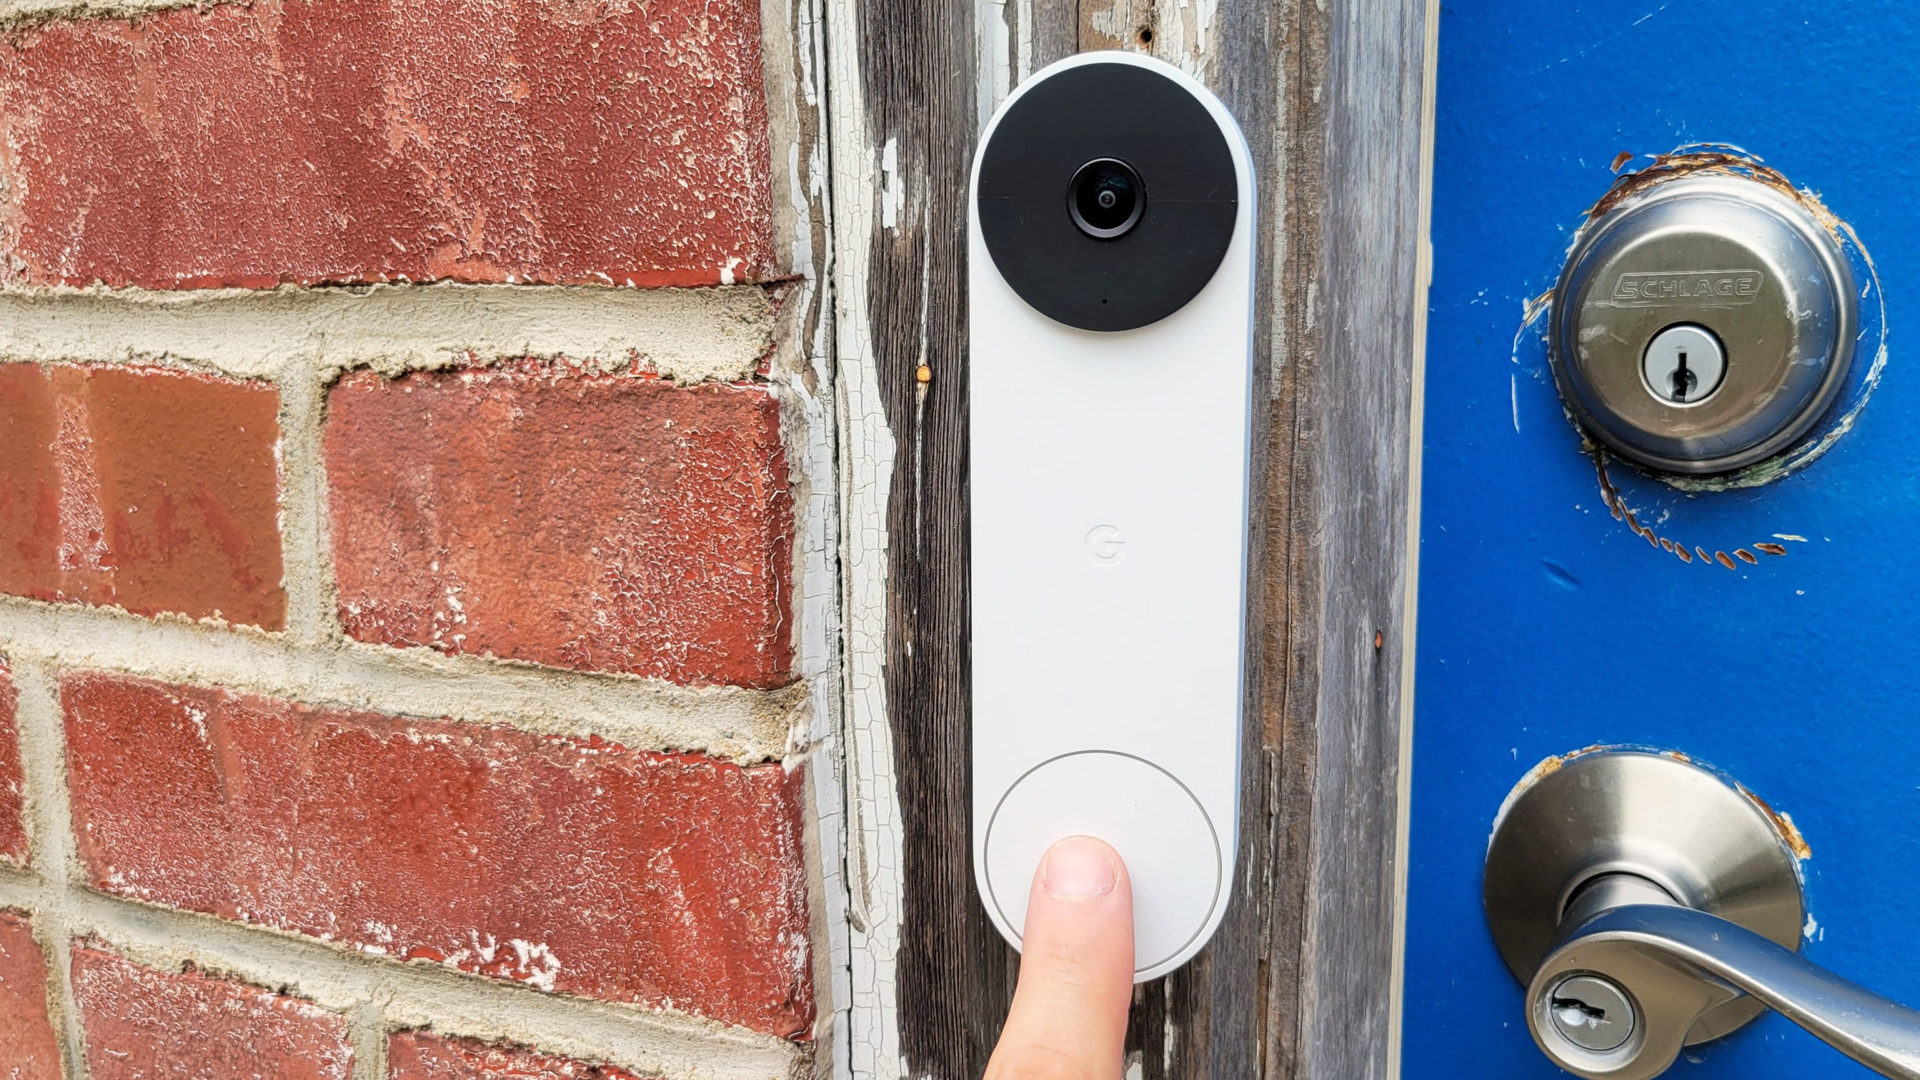 Google Nest Doorbell Review Pushing Doorbell